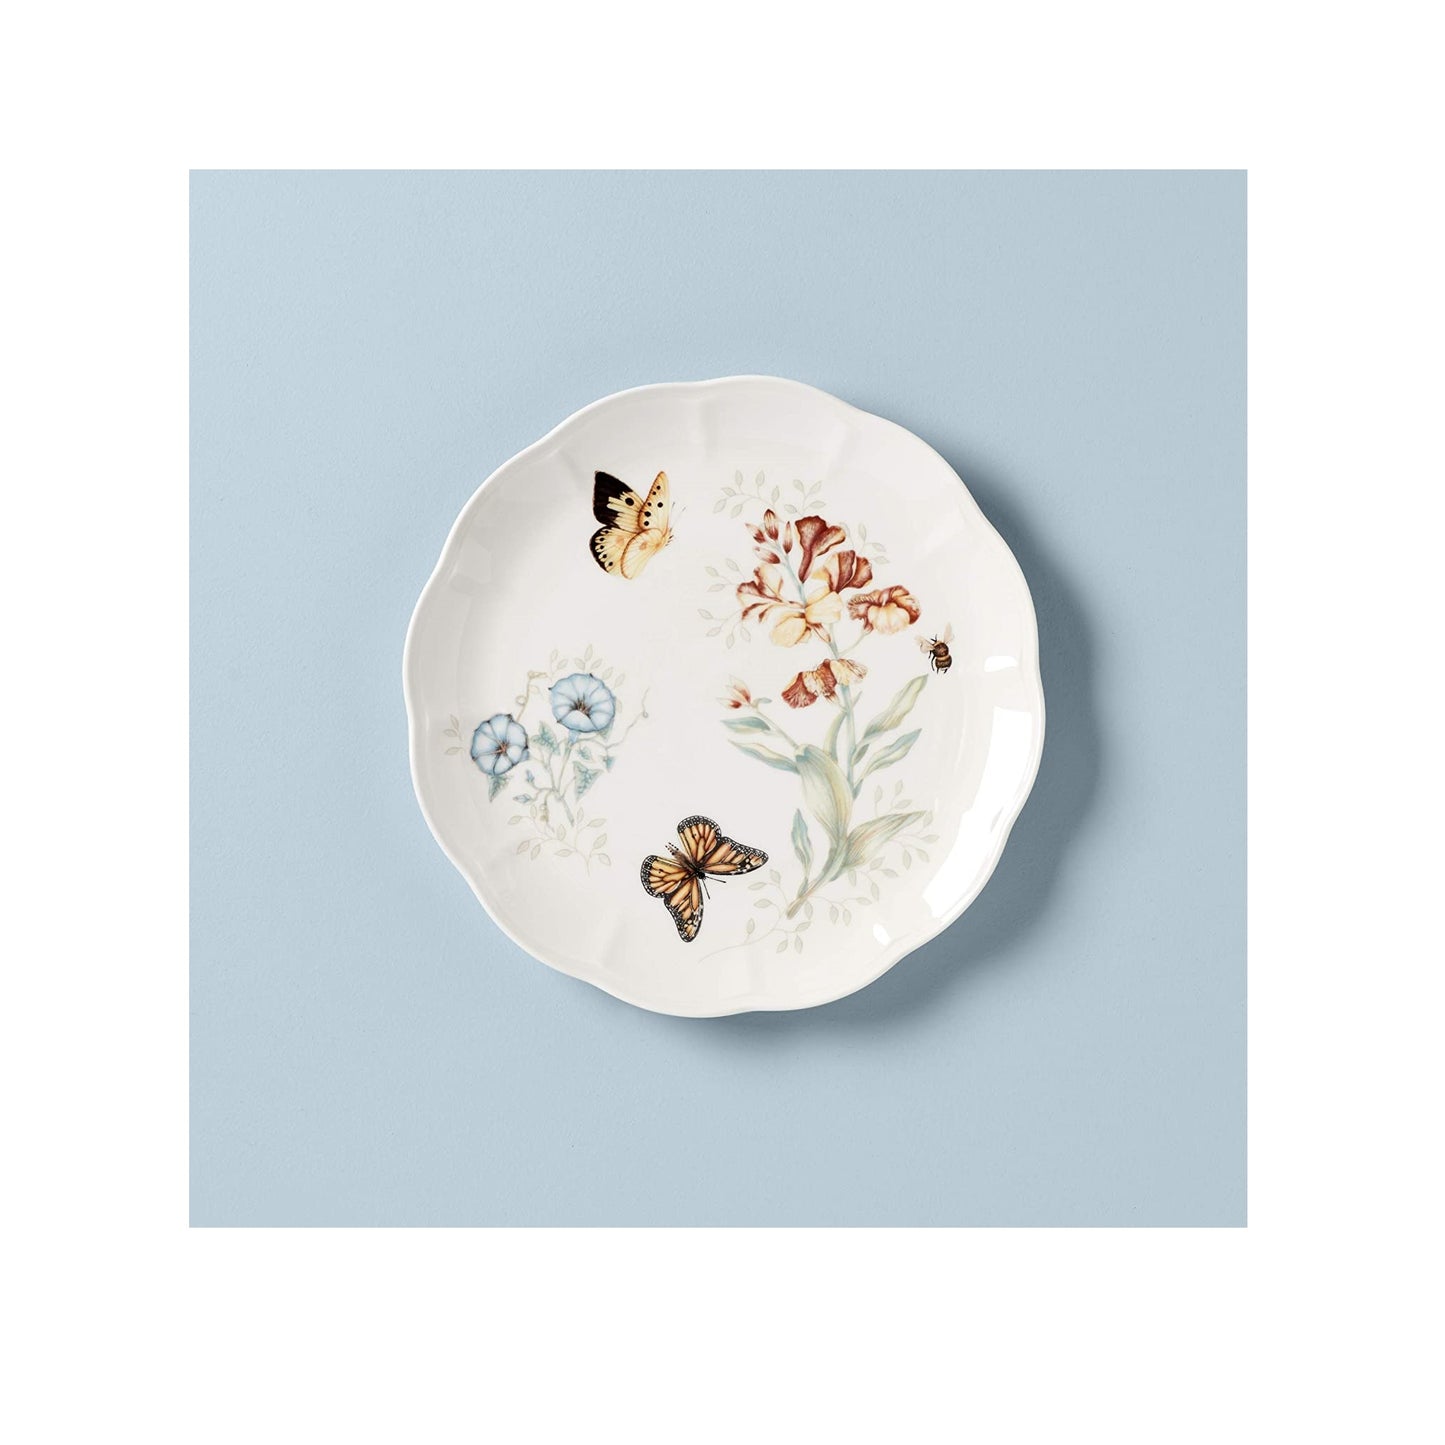 Butterfly Meadow Monarch Dinner Plate by Lenox